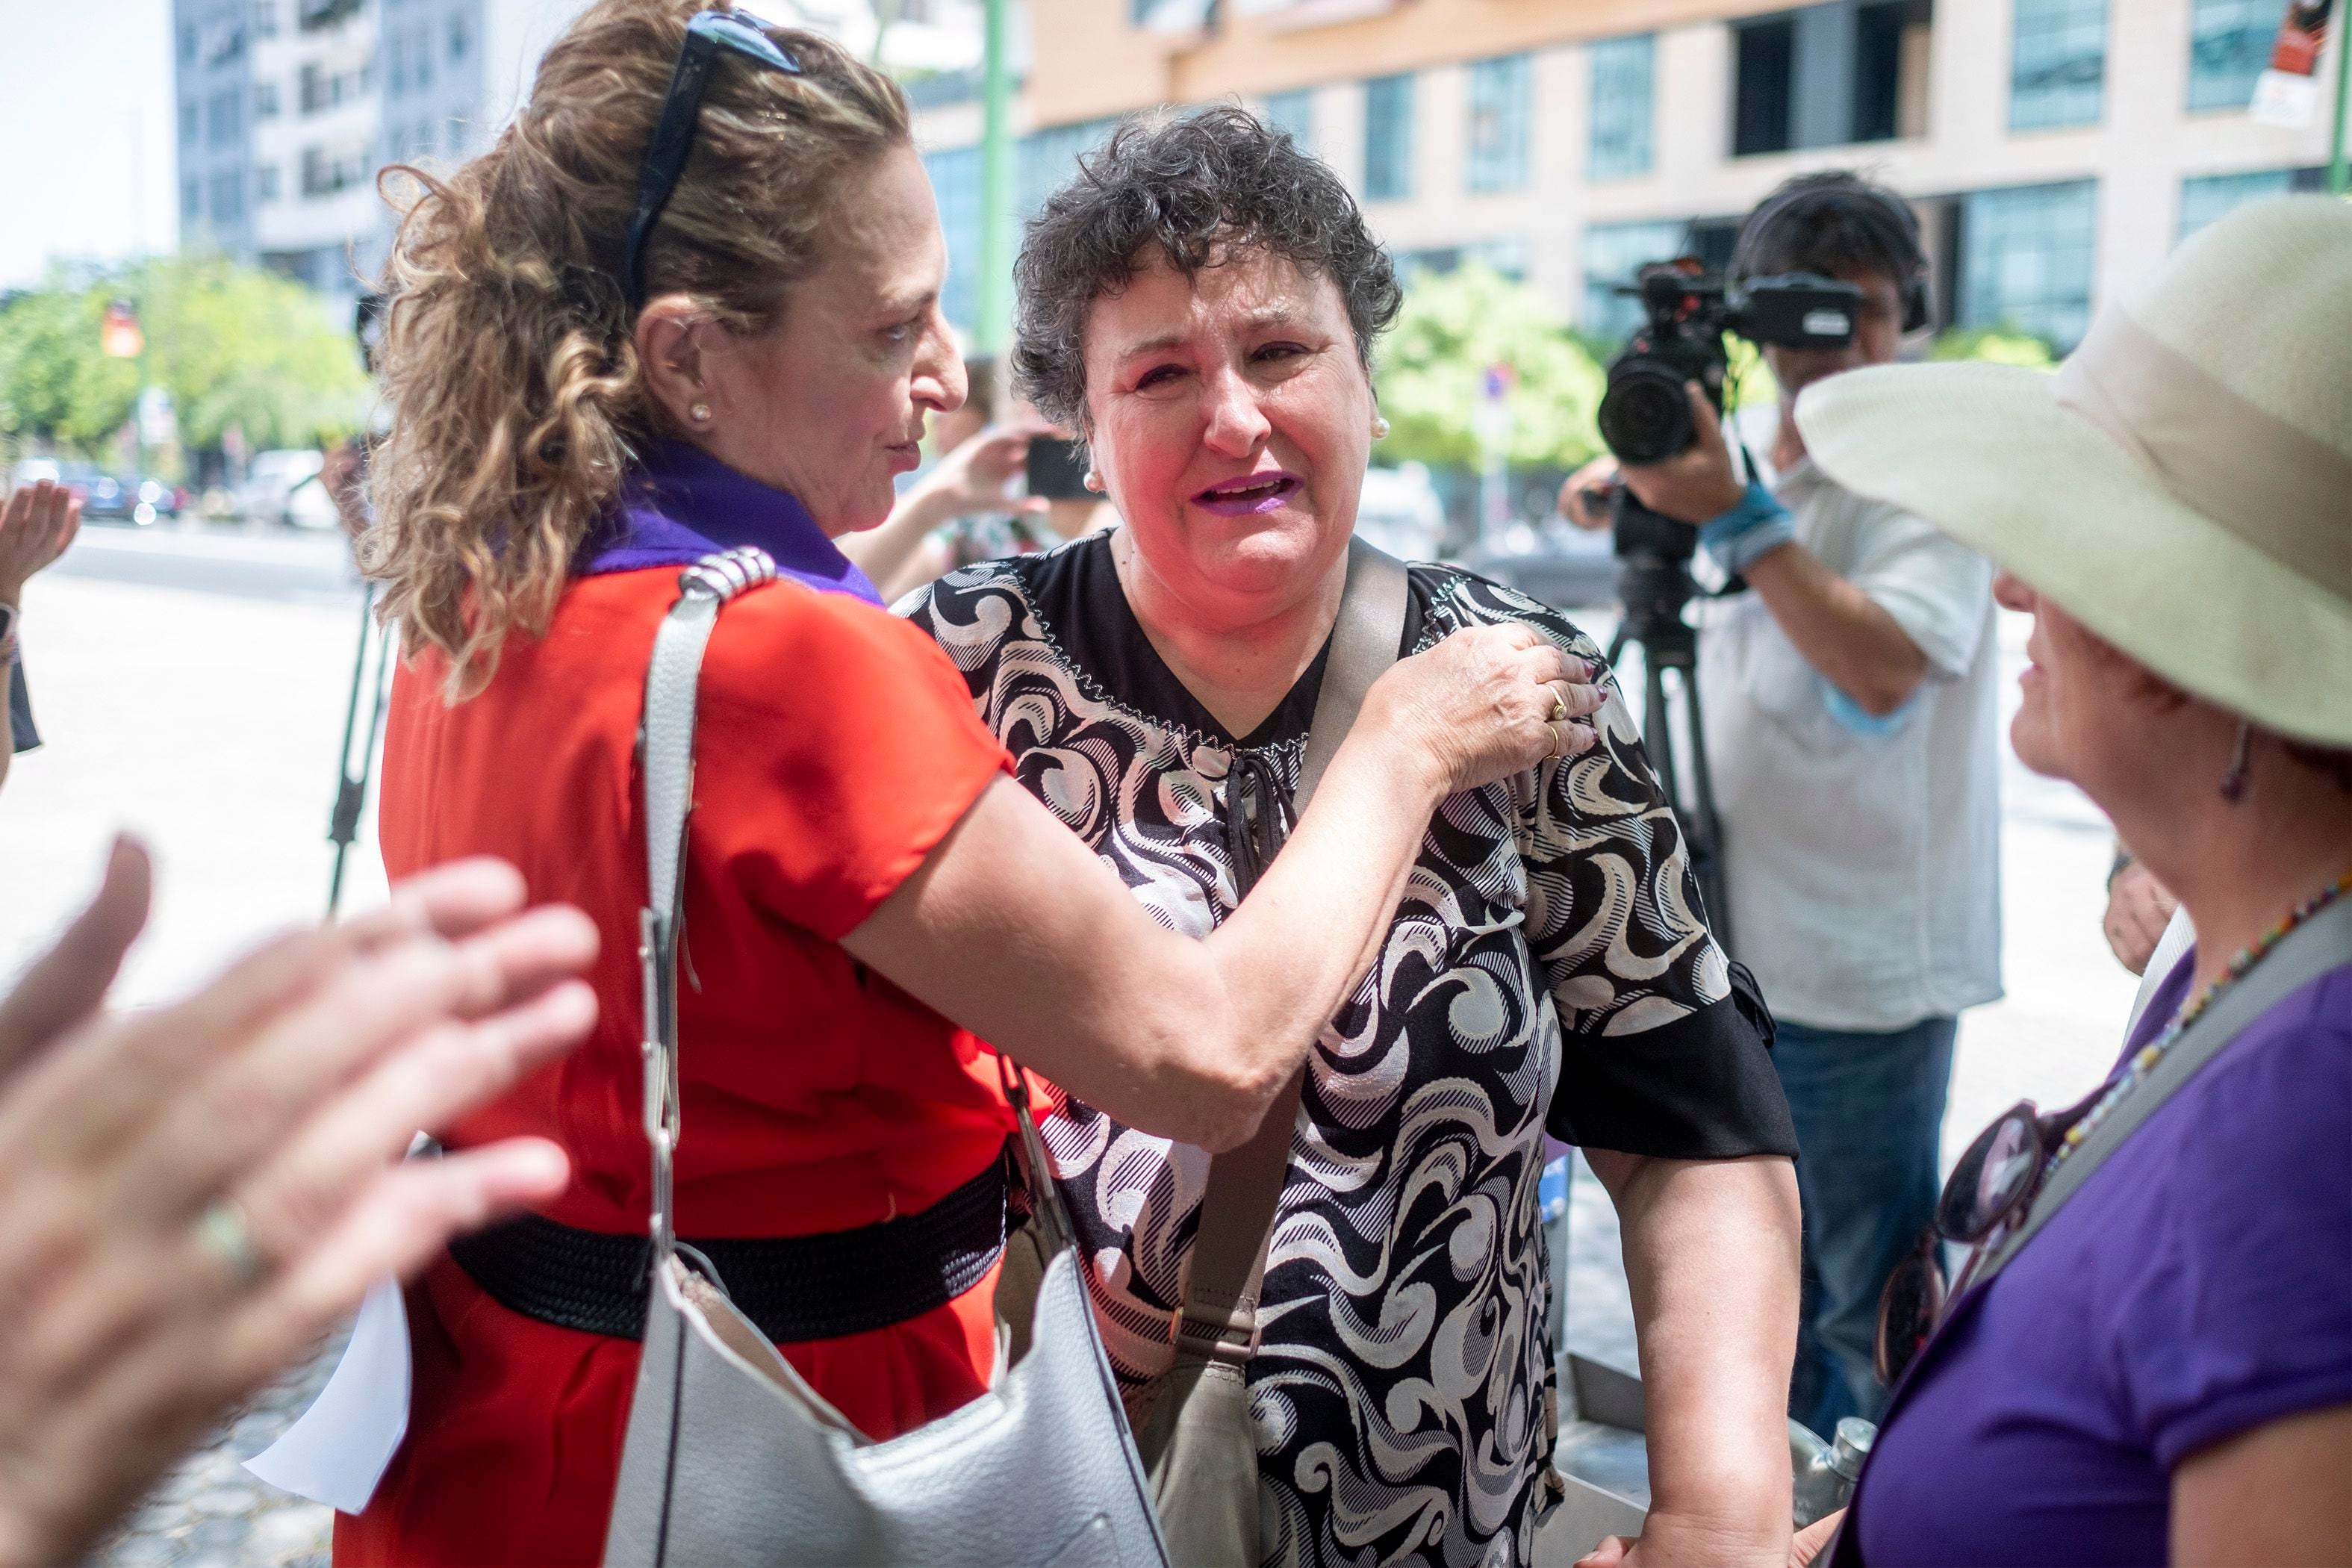 María Salmerón ya no volverá a la cárcel: “Han sido dos décadas para volver a respirar tranquila”